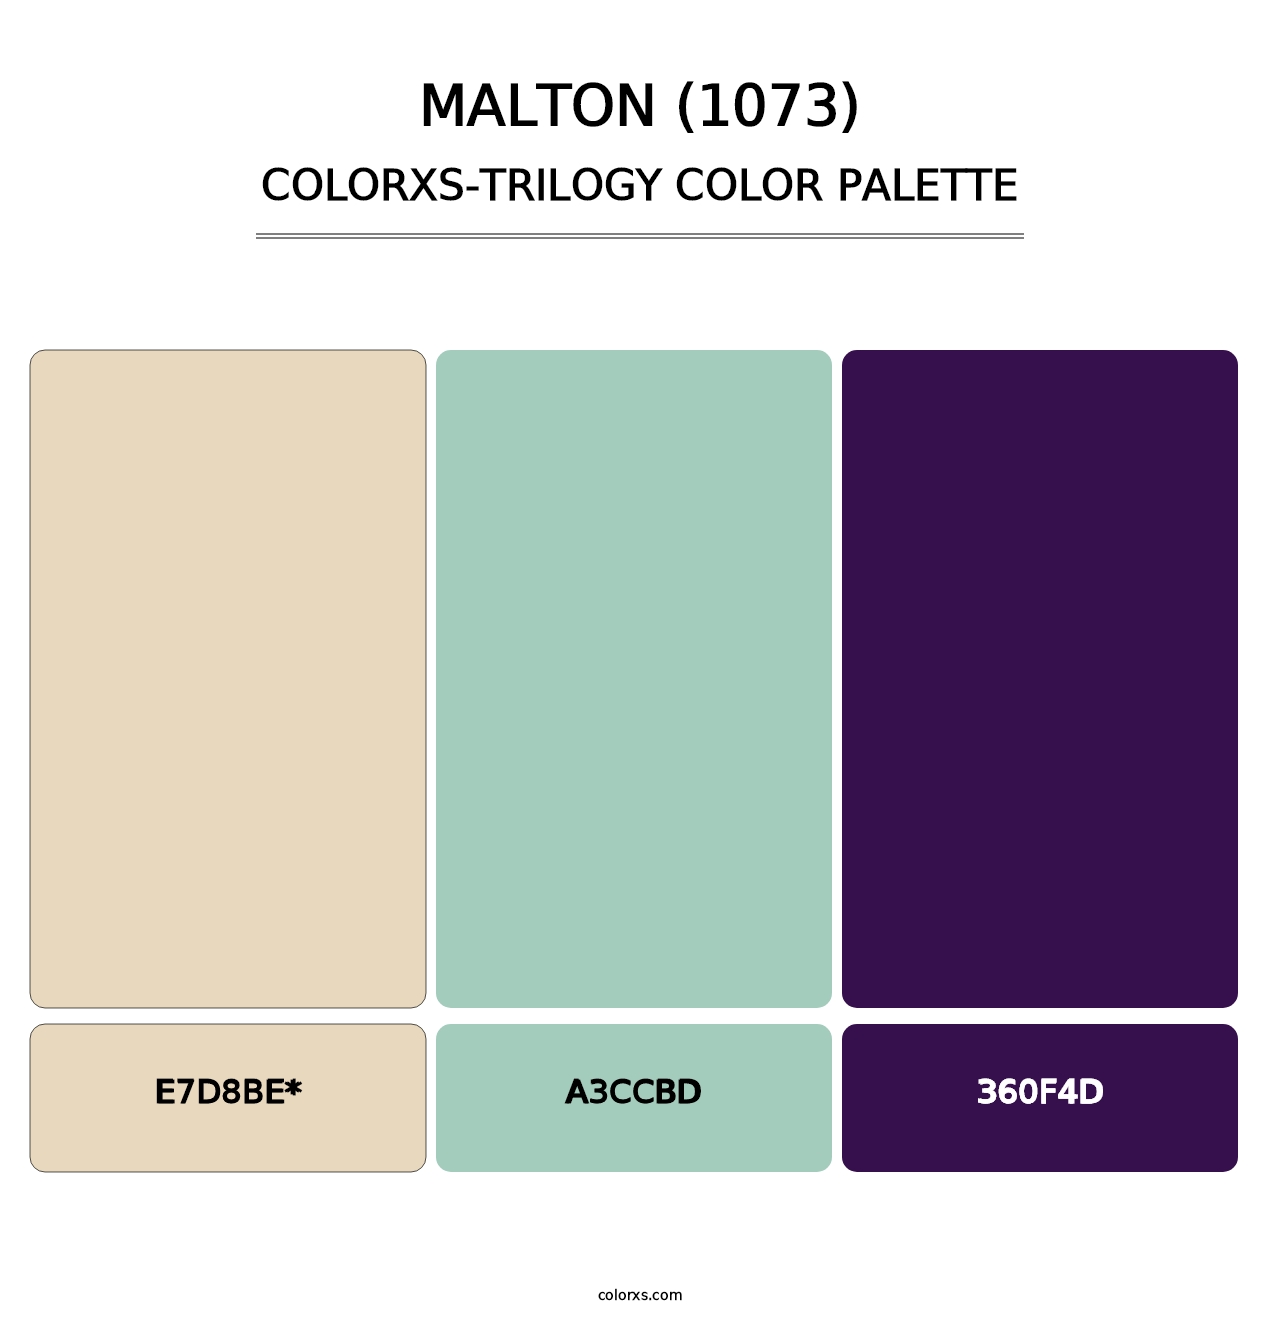 Malton (1073) - Colorxs Trilogy Palette